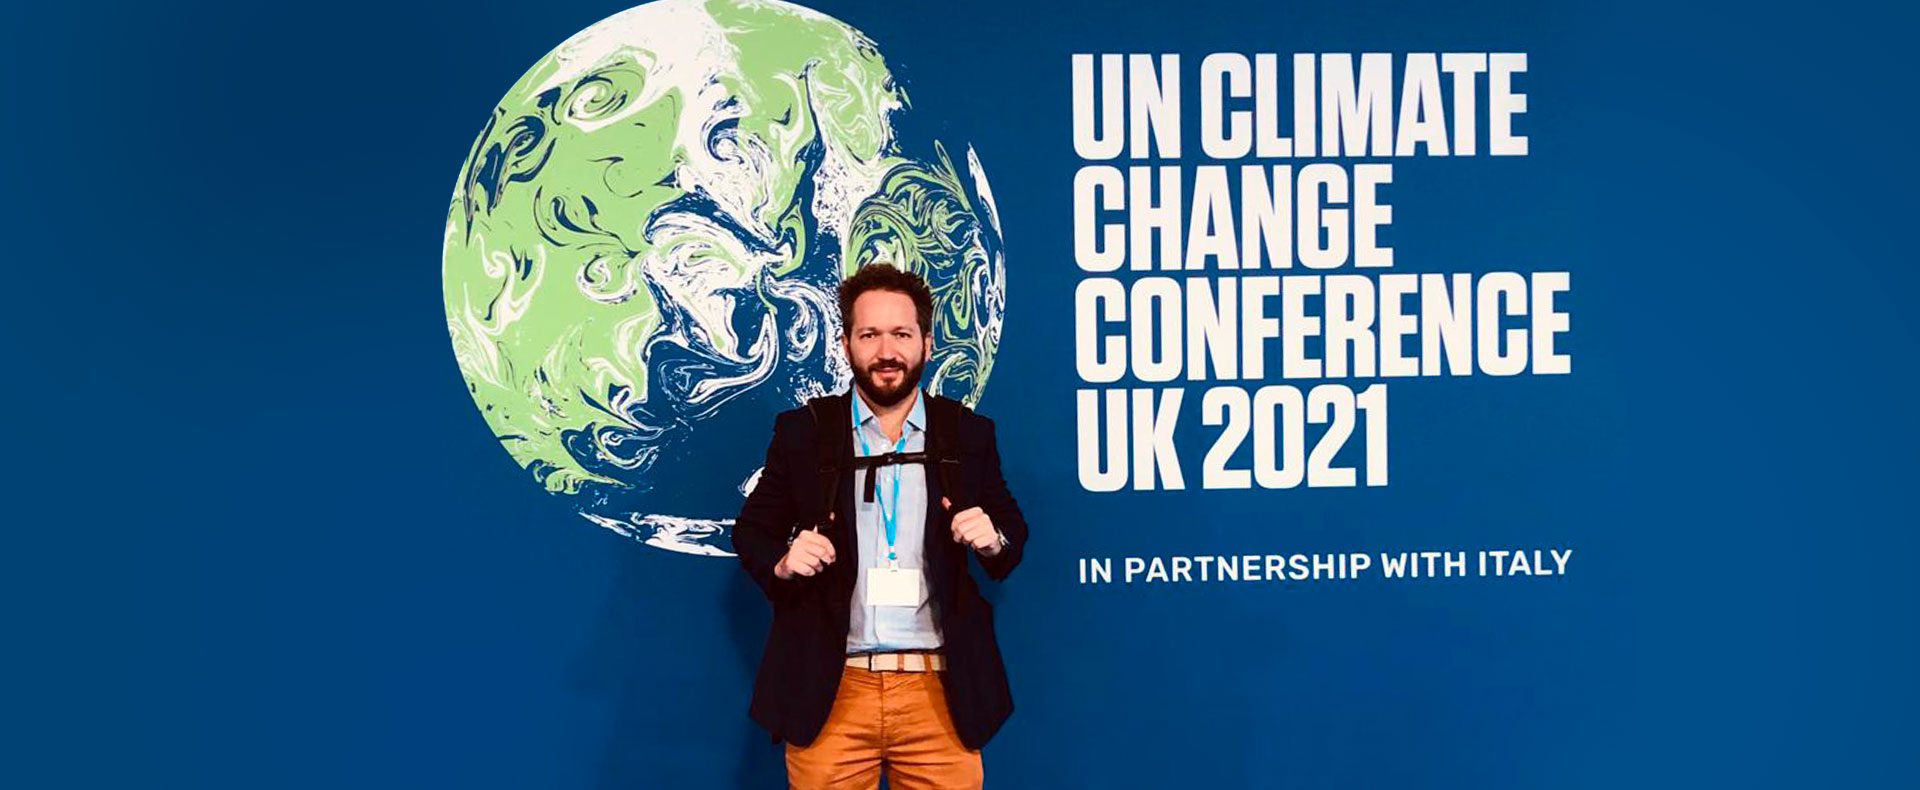 Plínio Ribeiro, CEO da Biofílica Ambipar Environment na COP26 em Glasgow, Escócia.